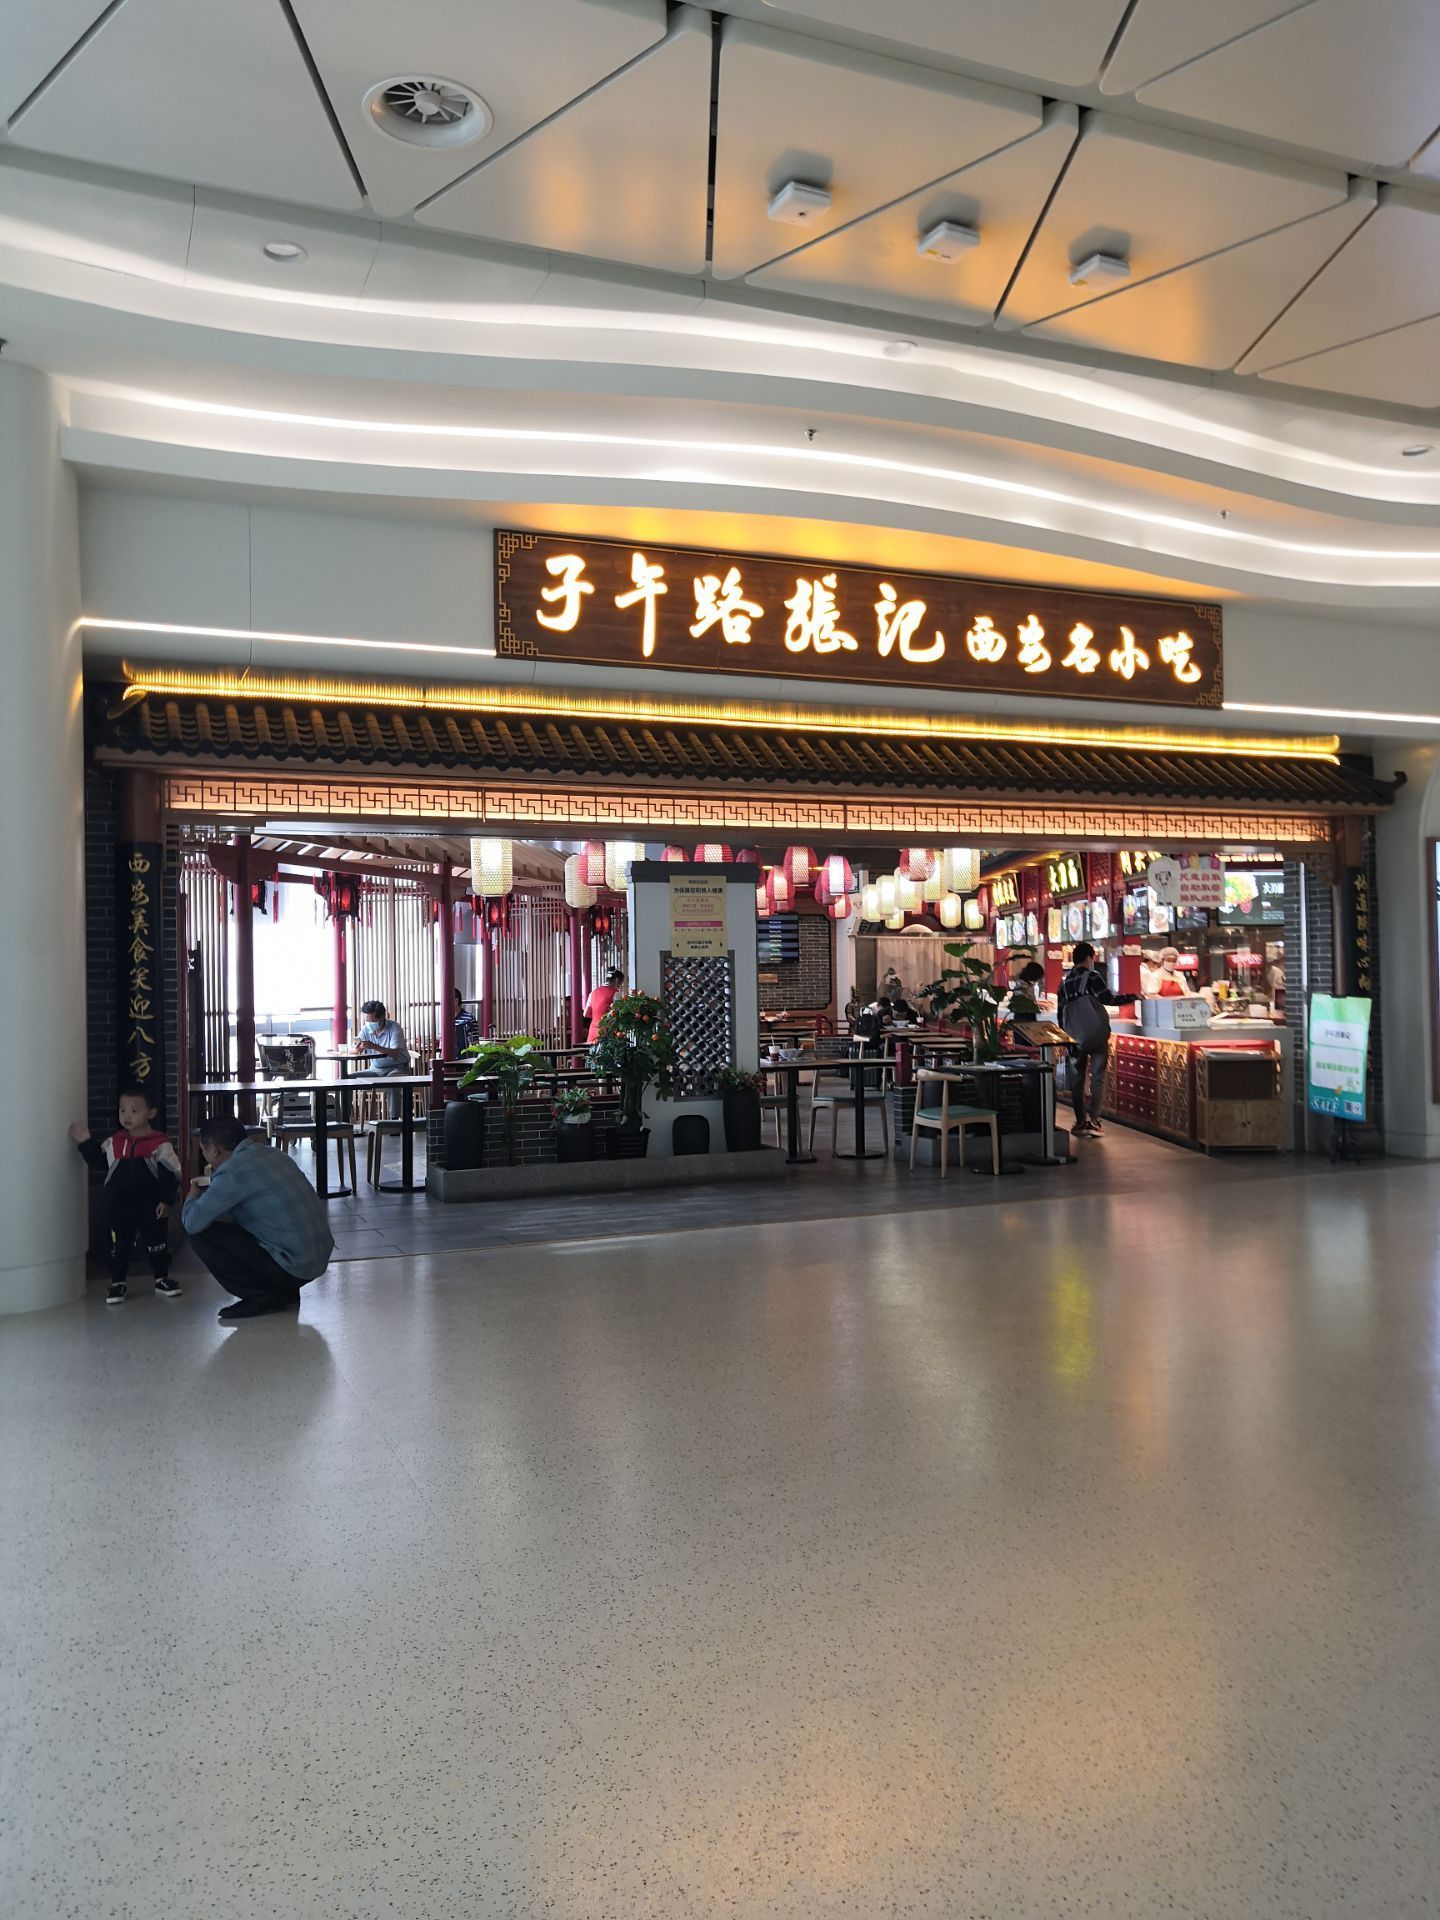 萧山机场唯一一家免税店重装开业 设计彰显美丽杭州元素-浙江电商网-浙江在线